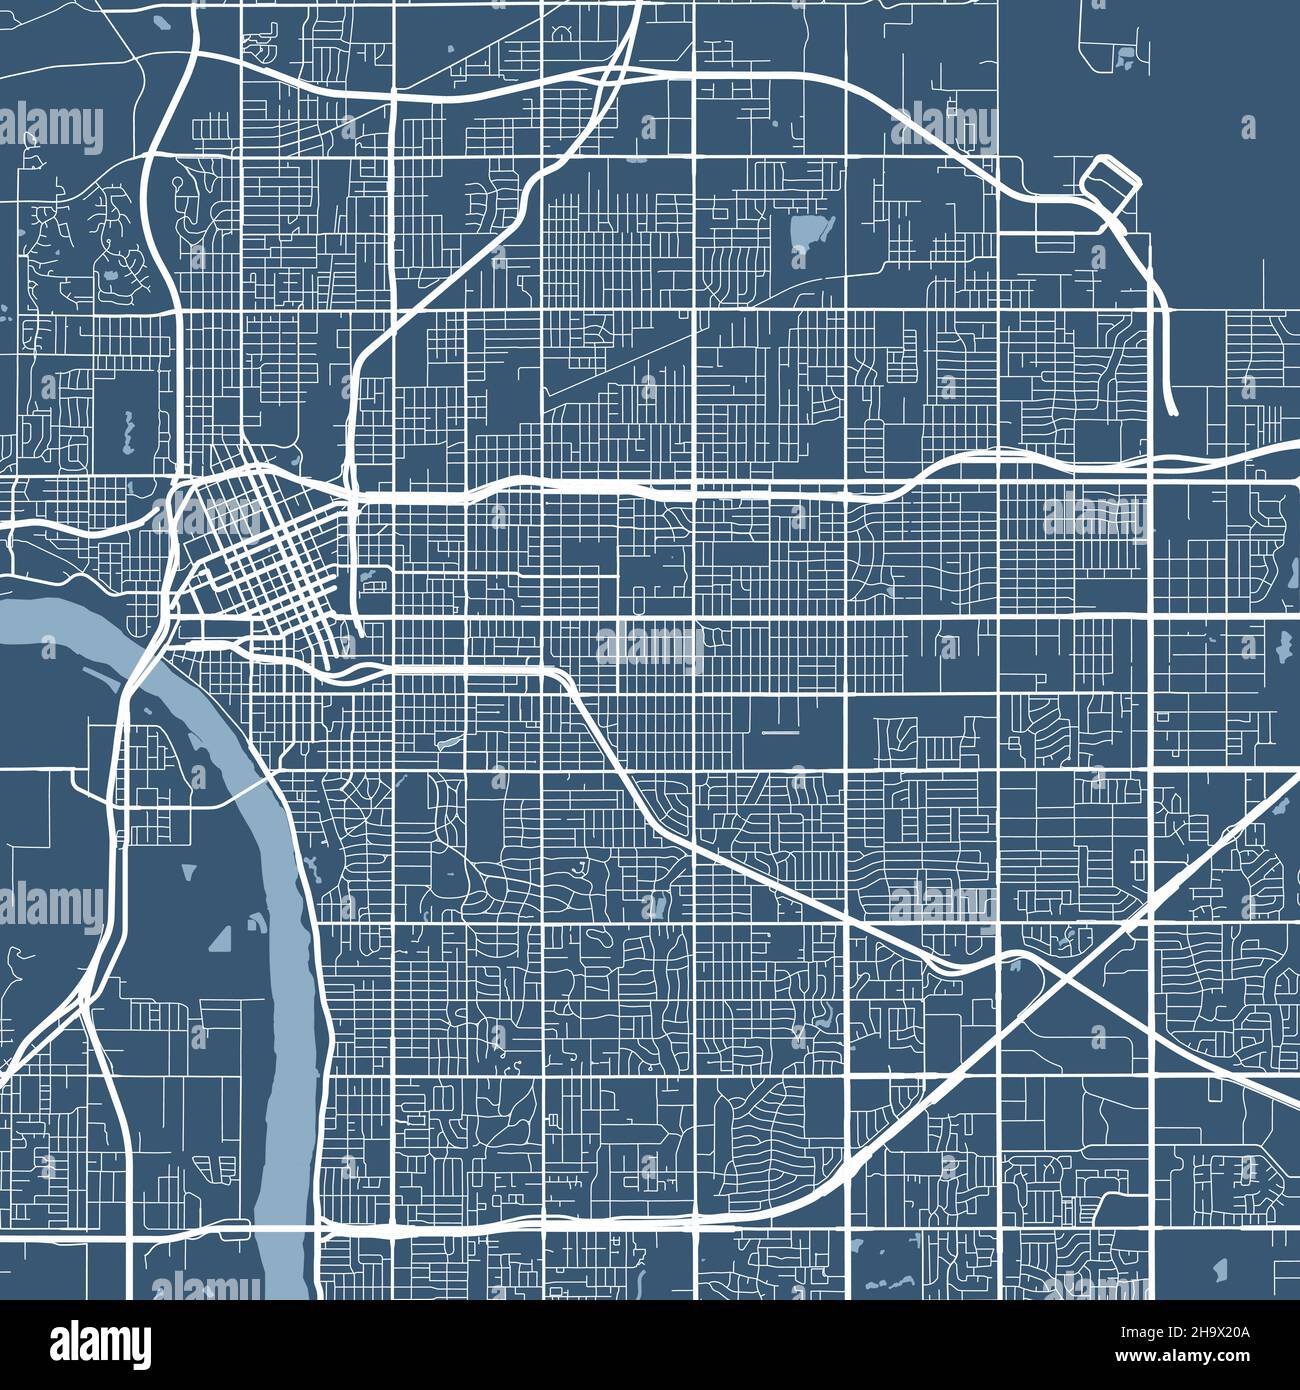 Mapa Detallado Del Rea Administrativa De La Ciudad De Tulsa